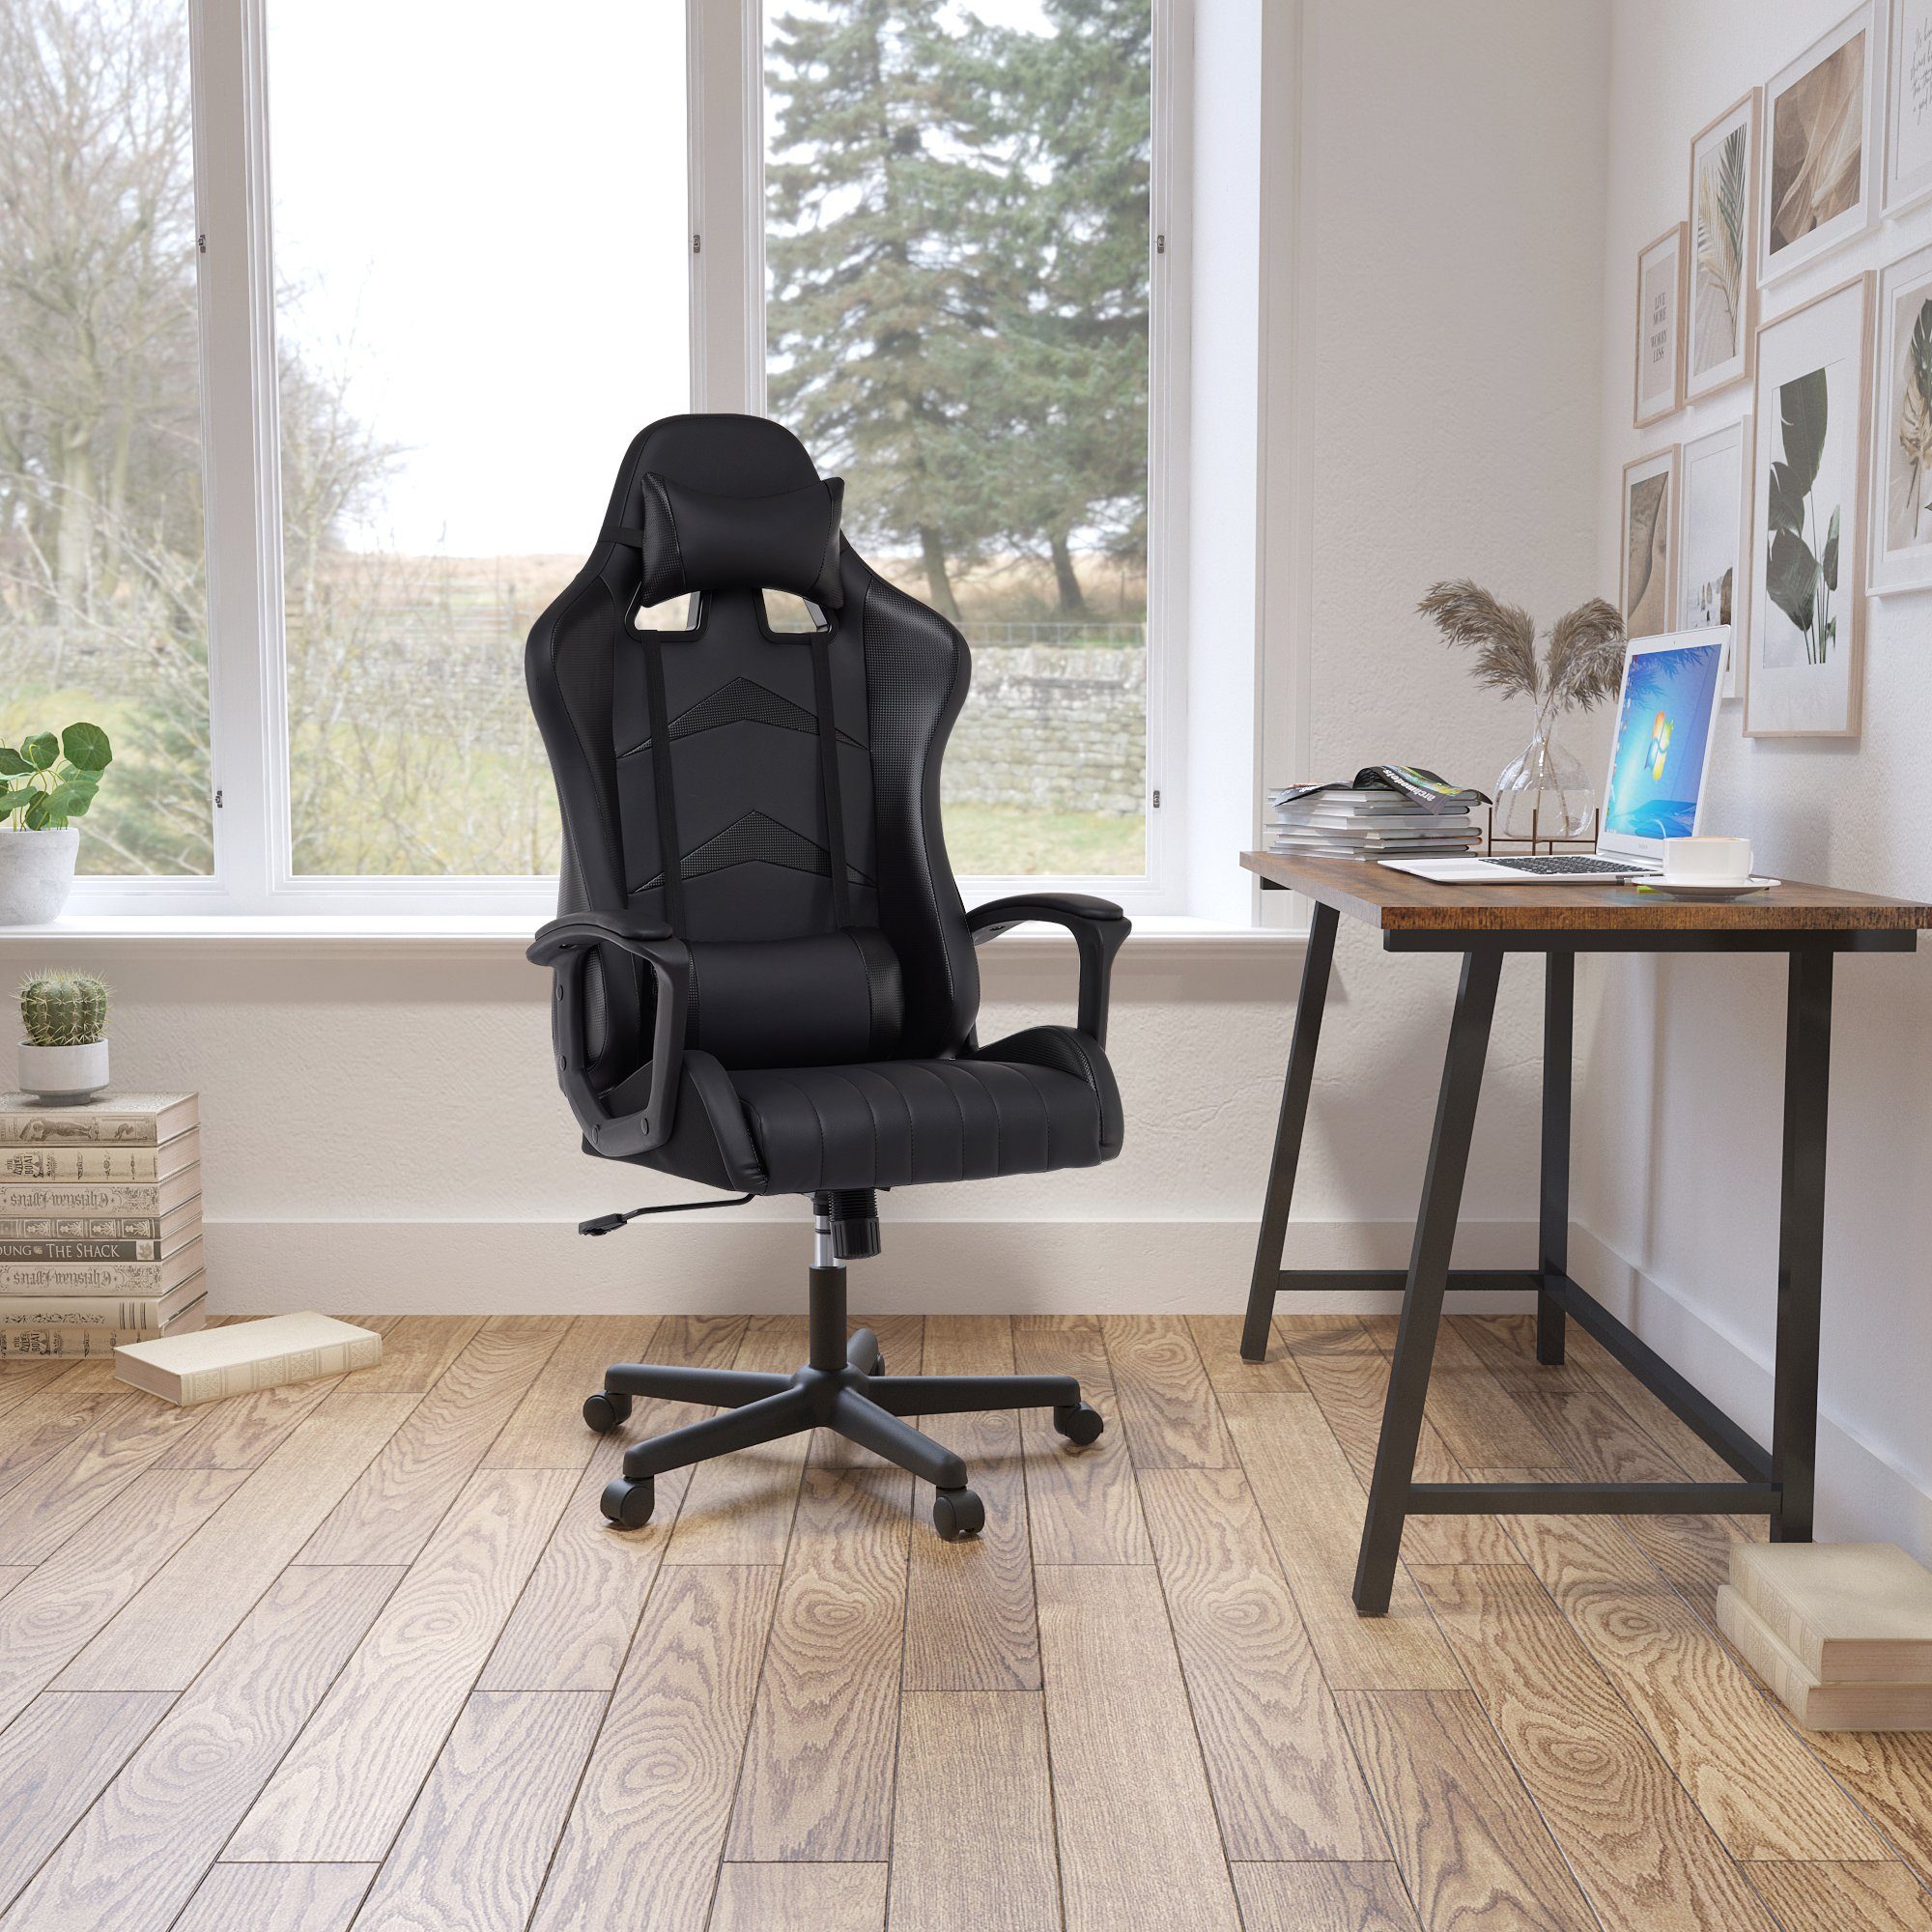 Gaming-Stuhl Intimate Heart WM Ergonomischer Rückenlehne schwarz mit Schreibtischstuhl Verstellbarer hoher